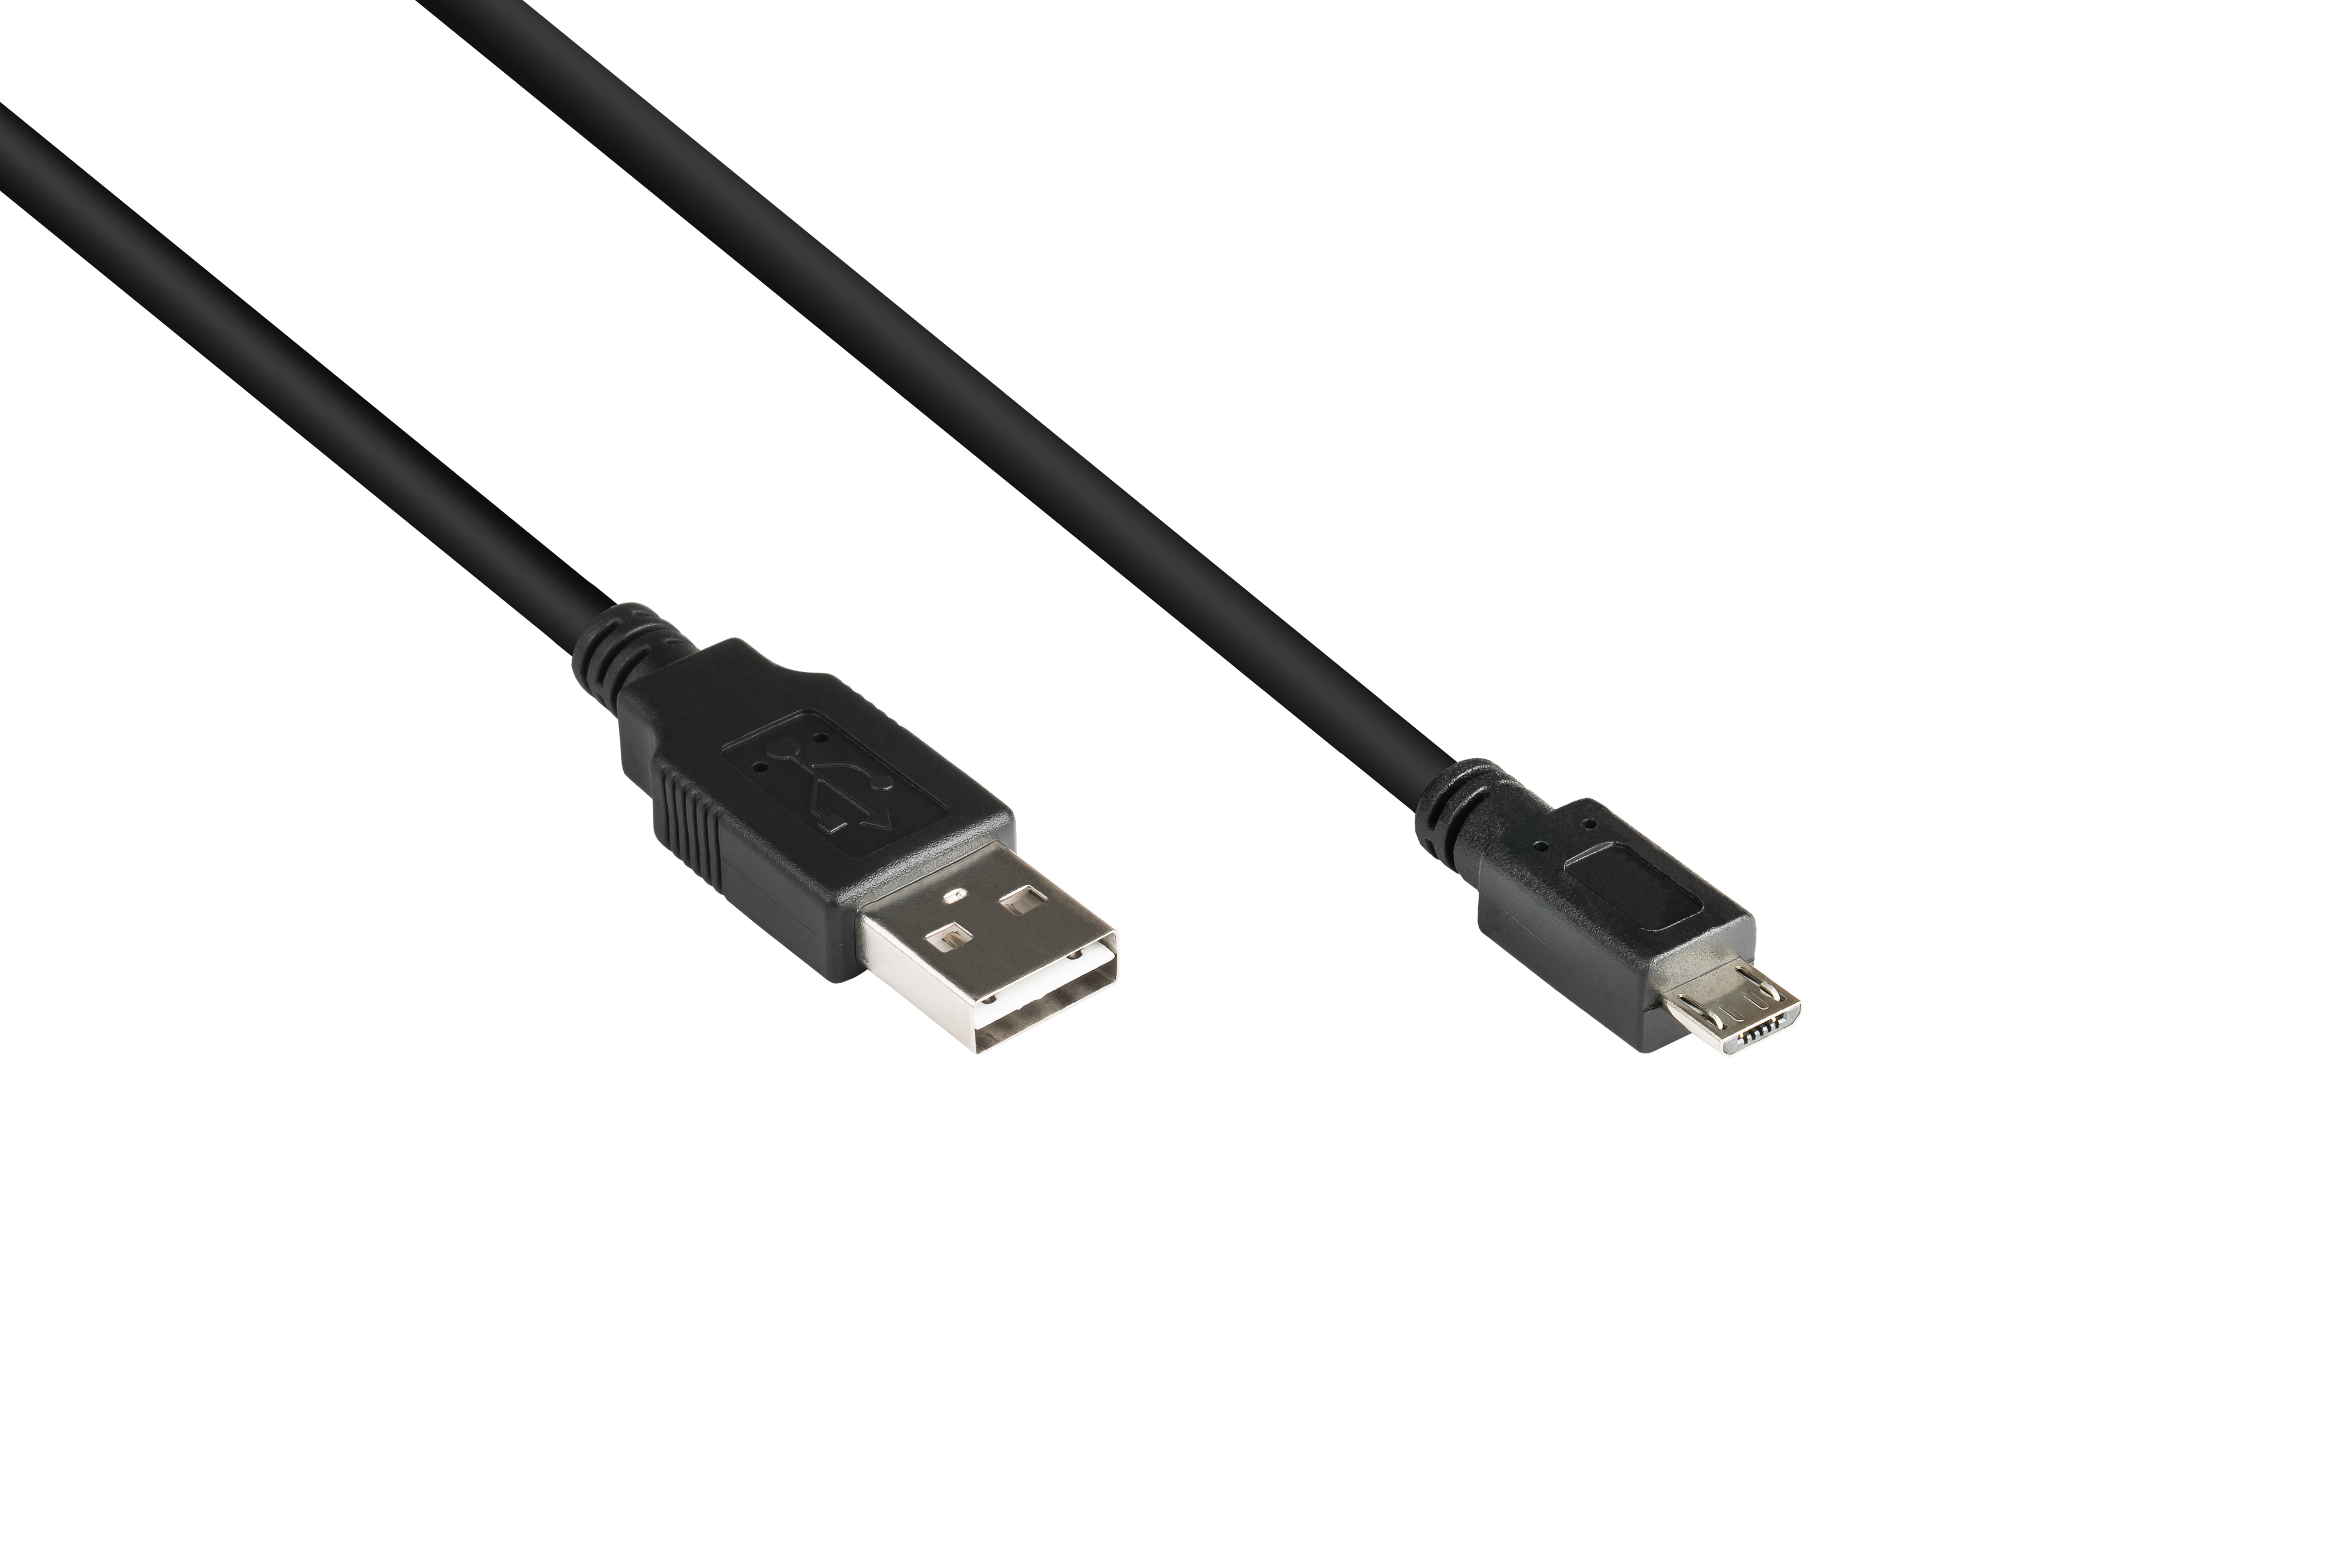 B, GOOD Stecker an Anschlusskabel EASY Stecker 2.0 schwarz Micro USB CONNECTIONS A